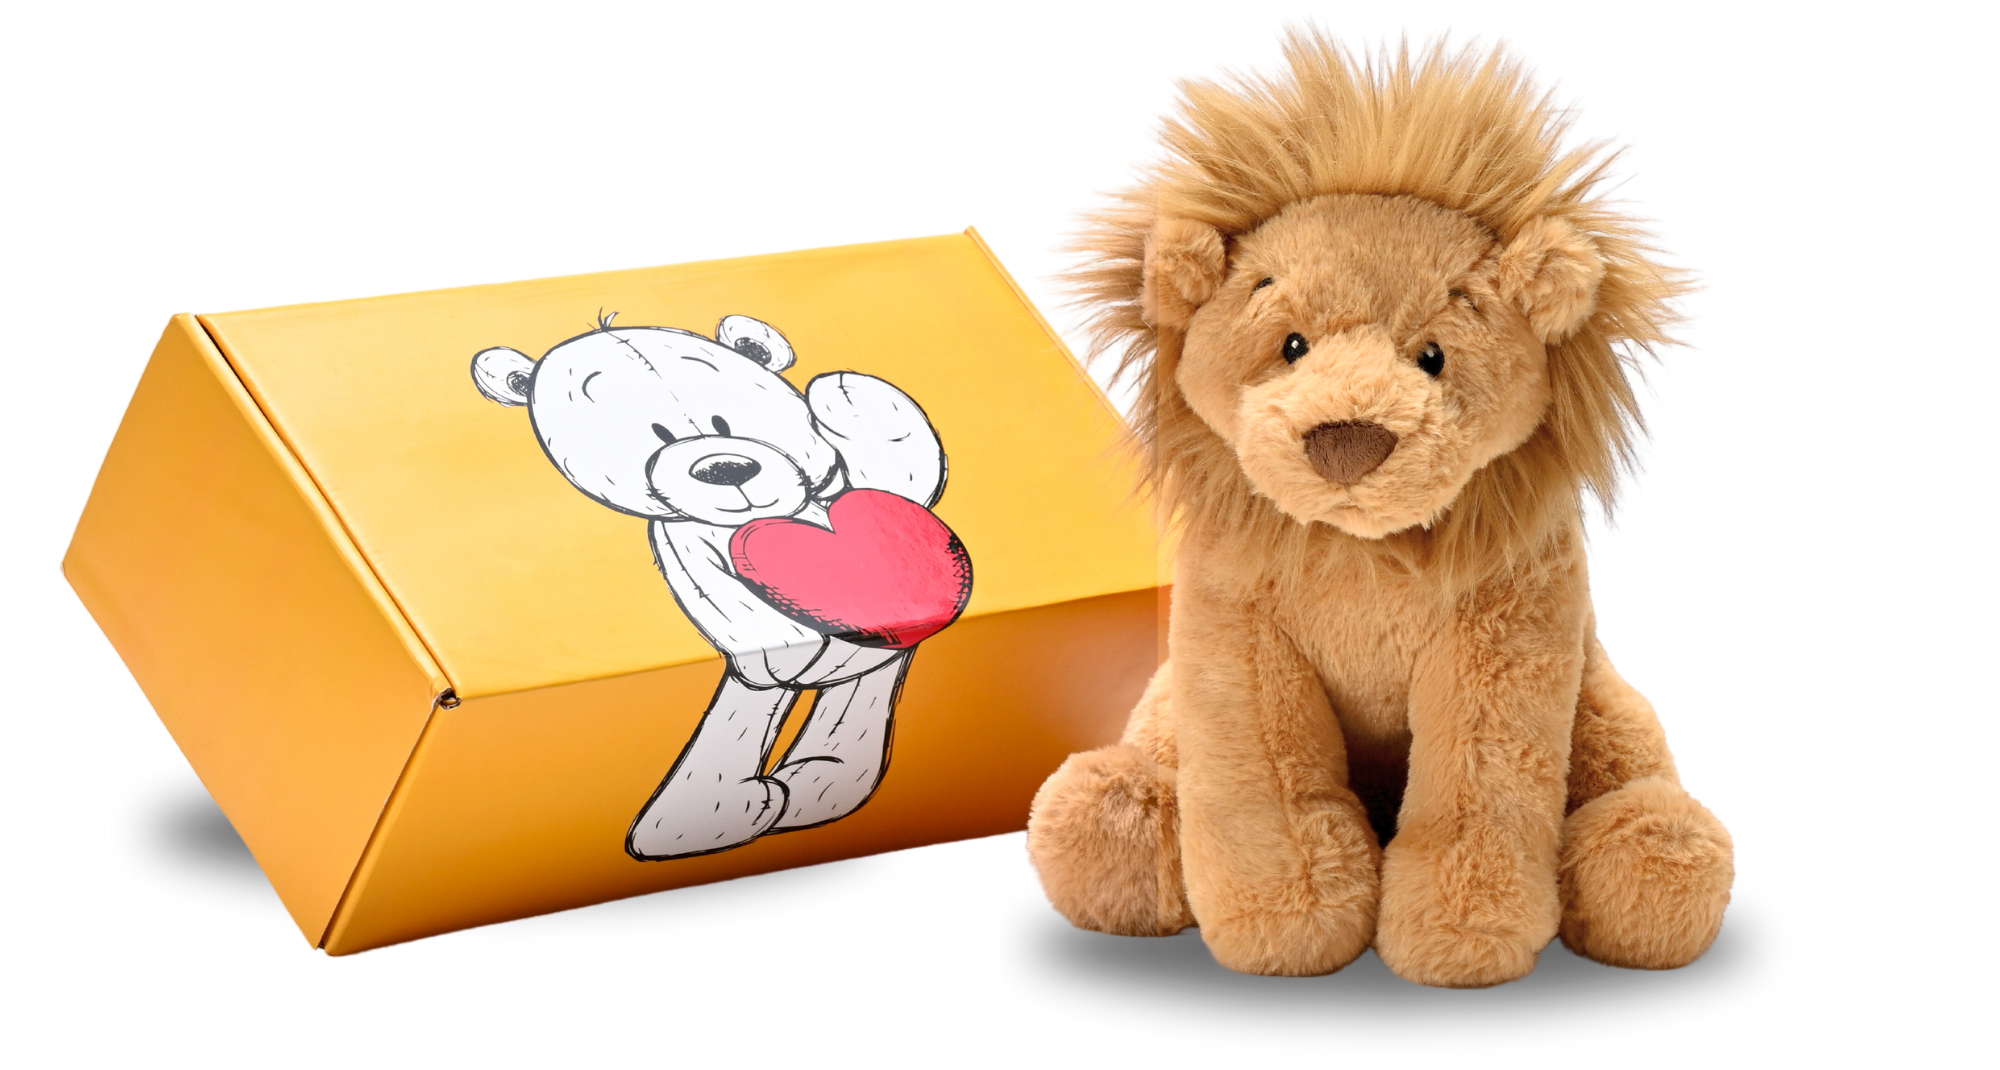 plush dubido lion with shipping box